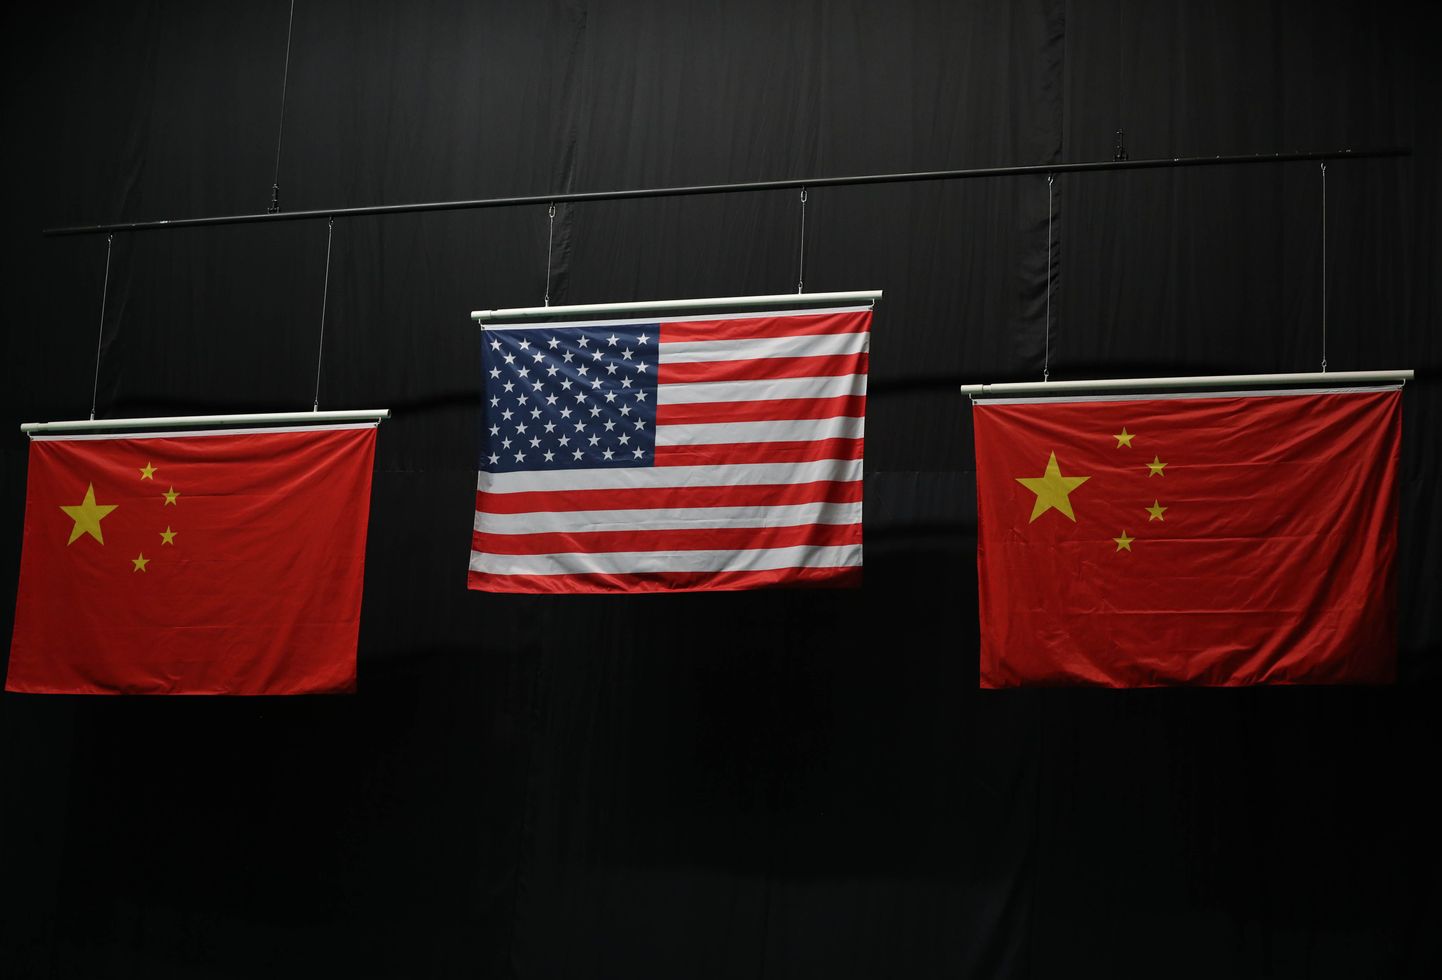 Hiina lipud Rio mängude laskmisvõistluse poodiumitseremoonial. Väikesed viisnurgad on kõik samas asendis.